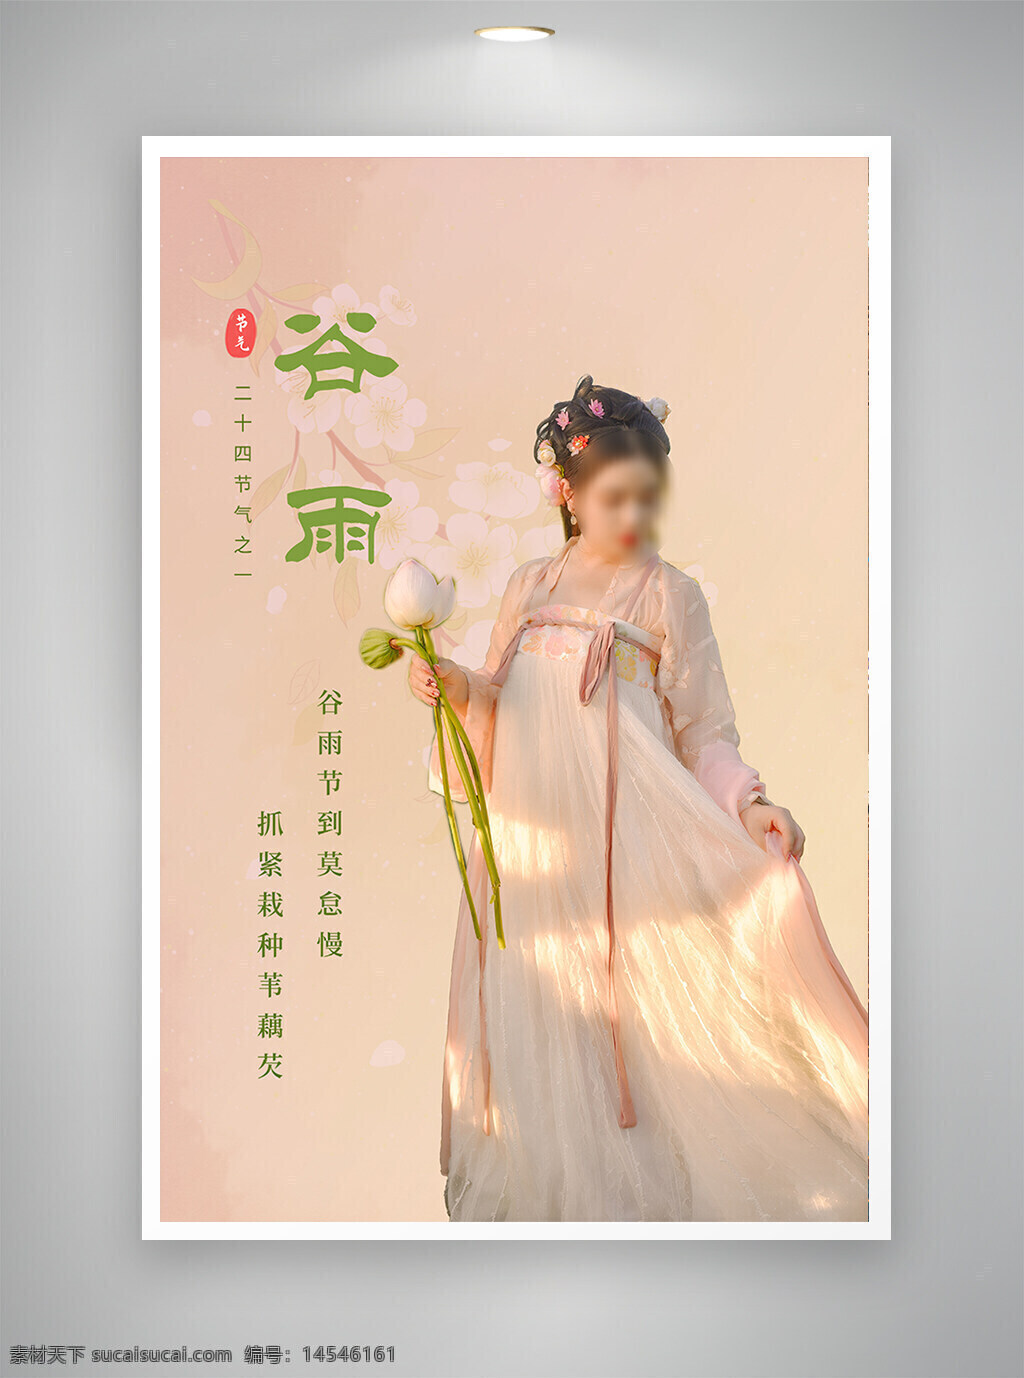 中国风海报 古风海报 节日海报 促销海报 谷雨海报